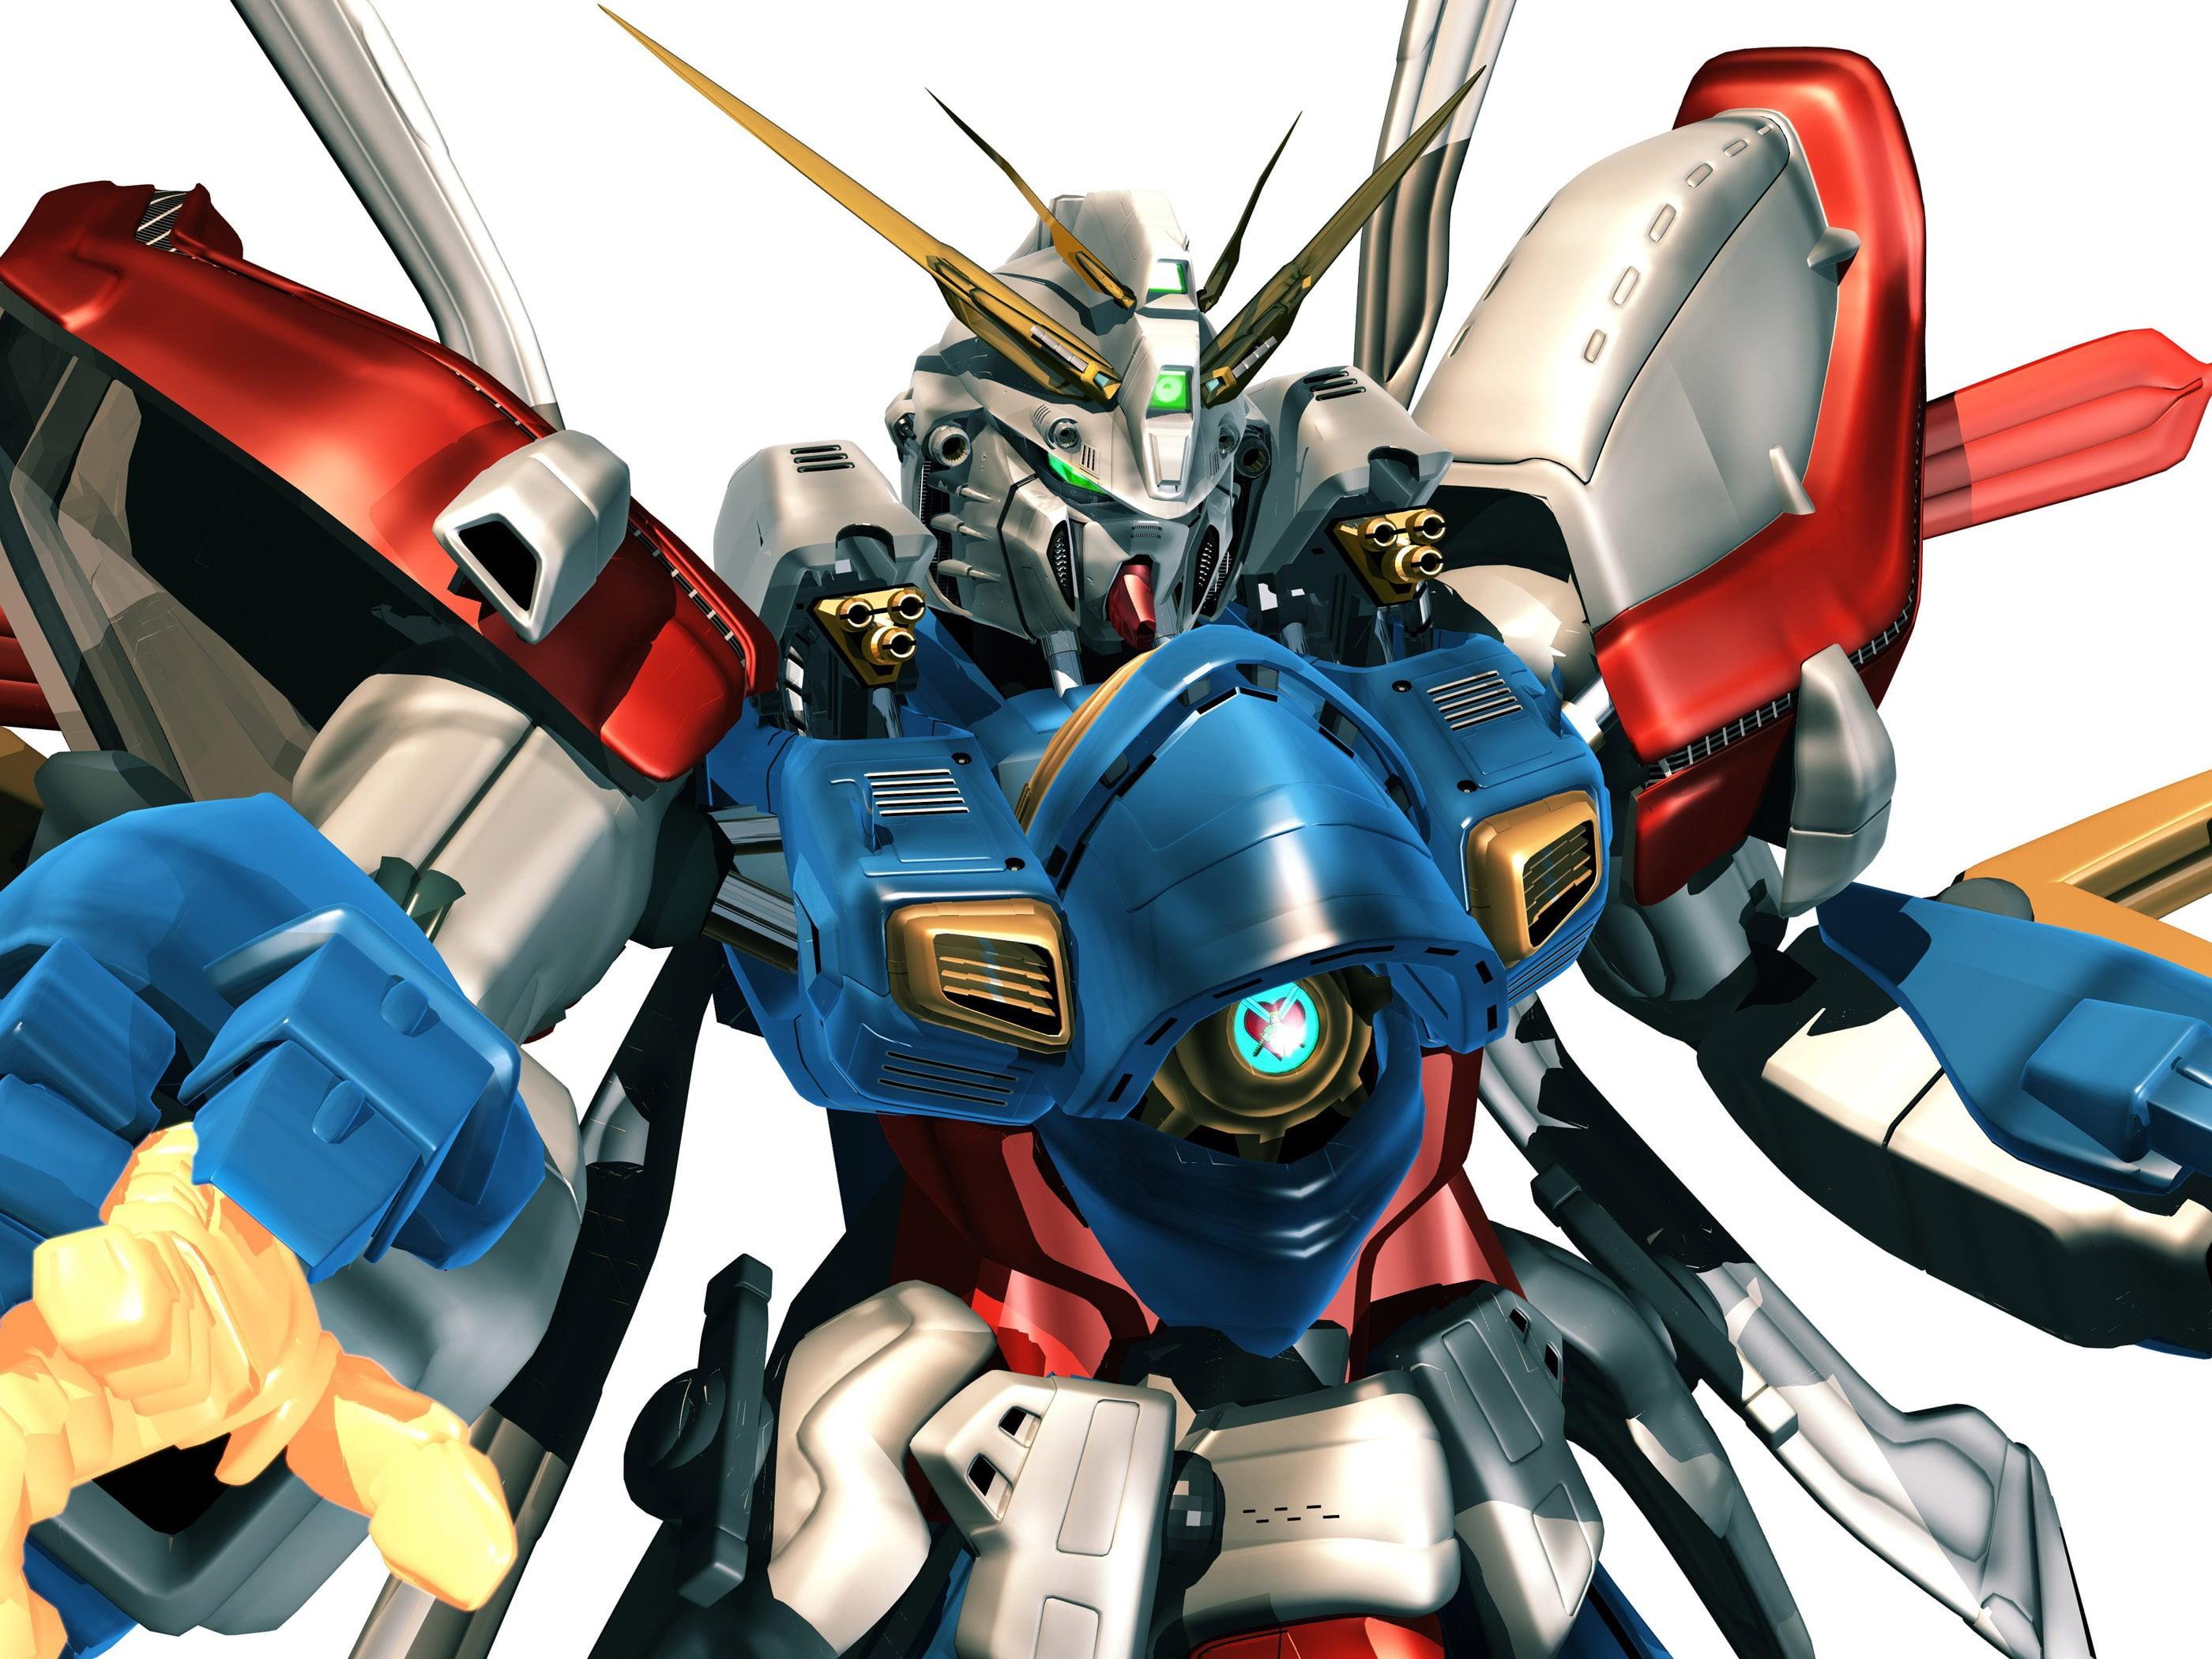 Gundam character illustration, mech, Gundam, robot HD